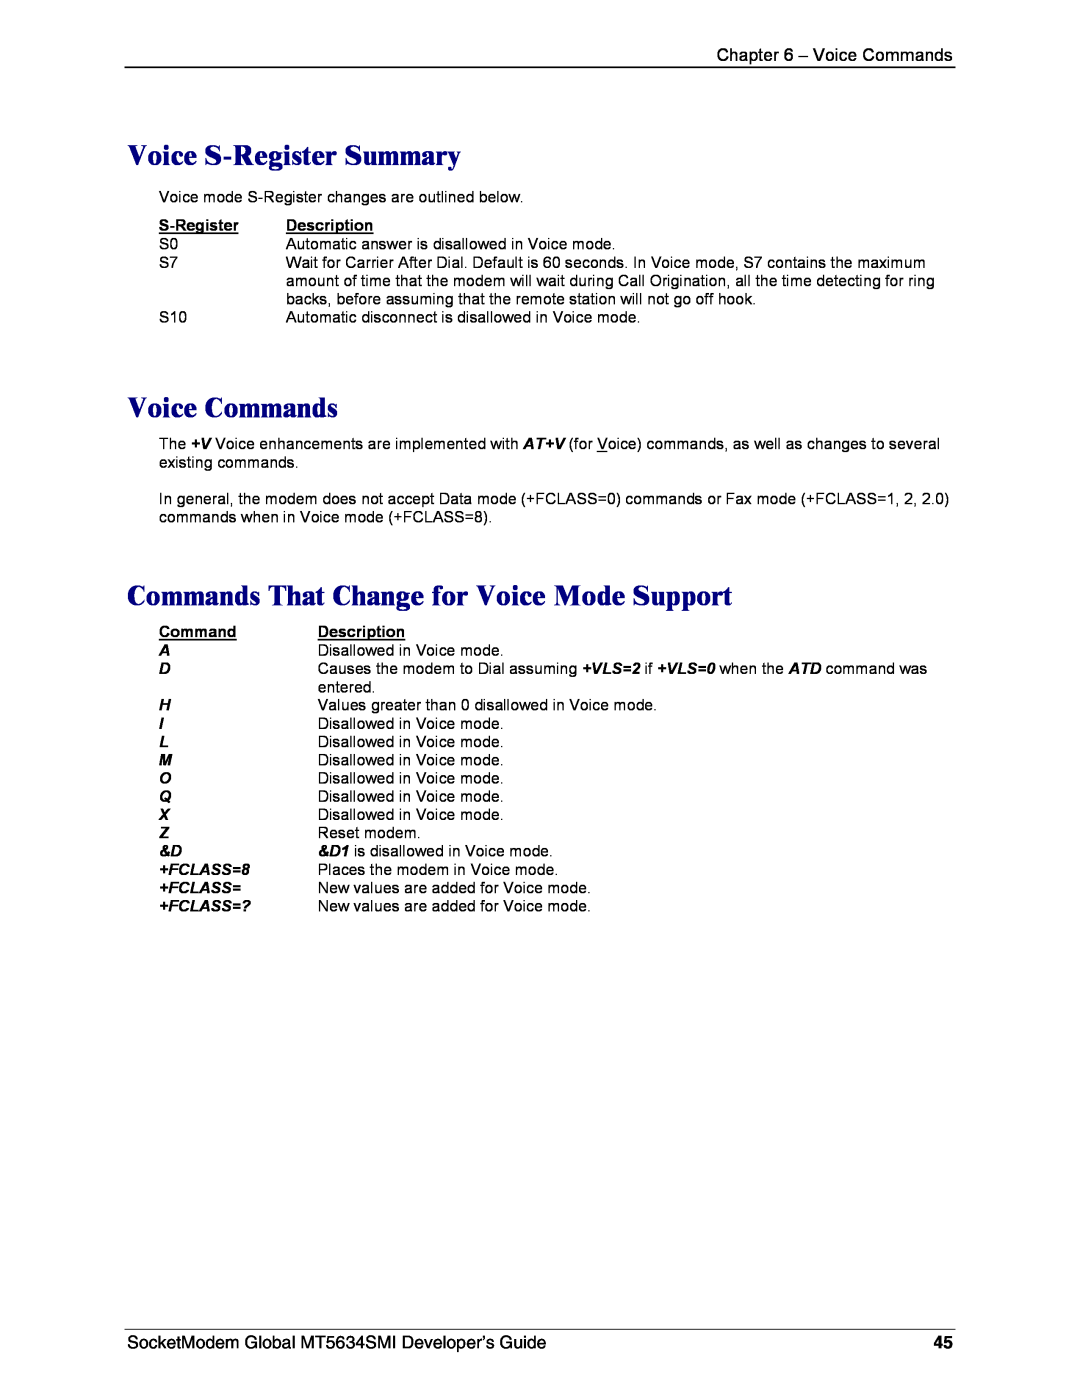 Technics MT5634SMI-34, MT5634SMI-92 Voice S-Register Summary, Voice Commands, Commands That Change for Voice Mode Support 